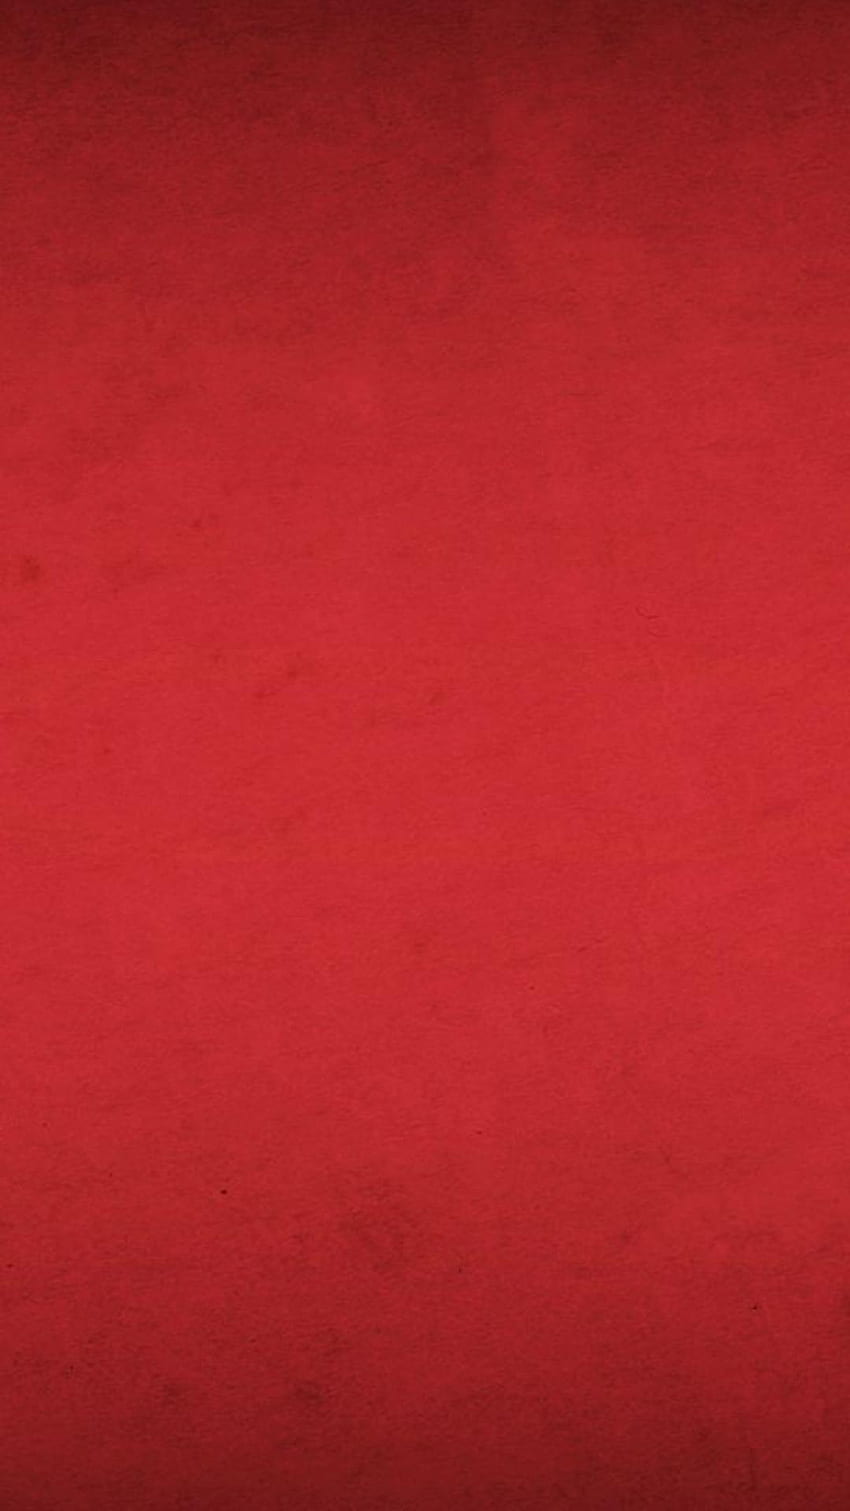 Keajaiban Merah wallpaper ponsel HD